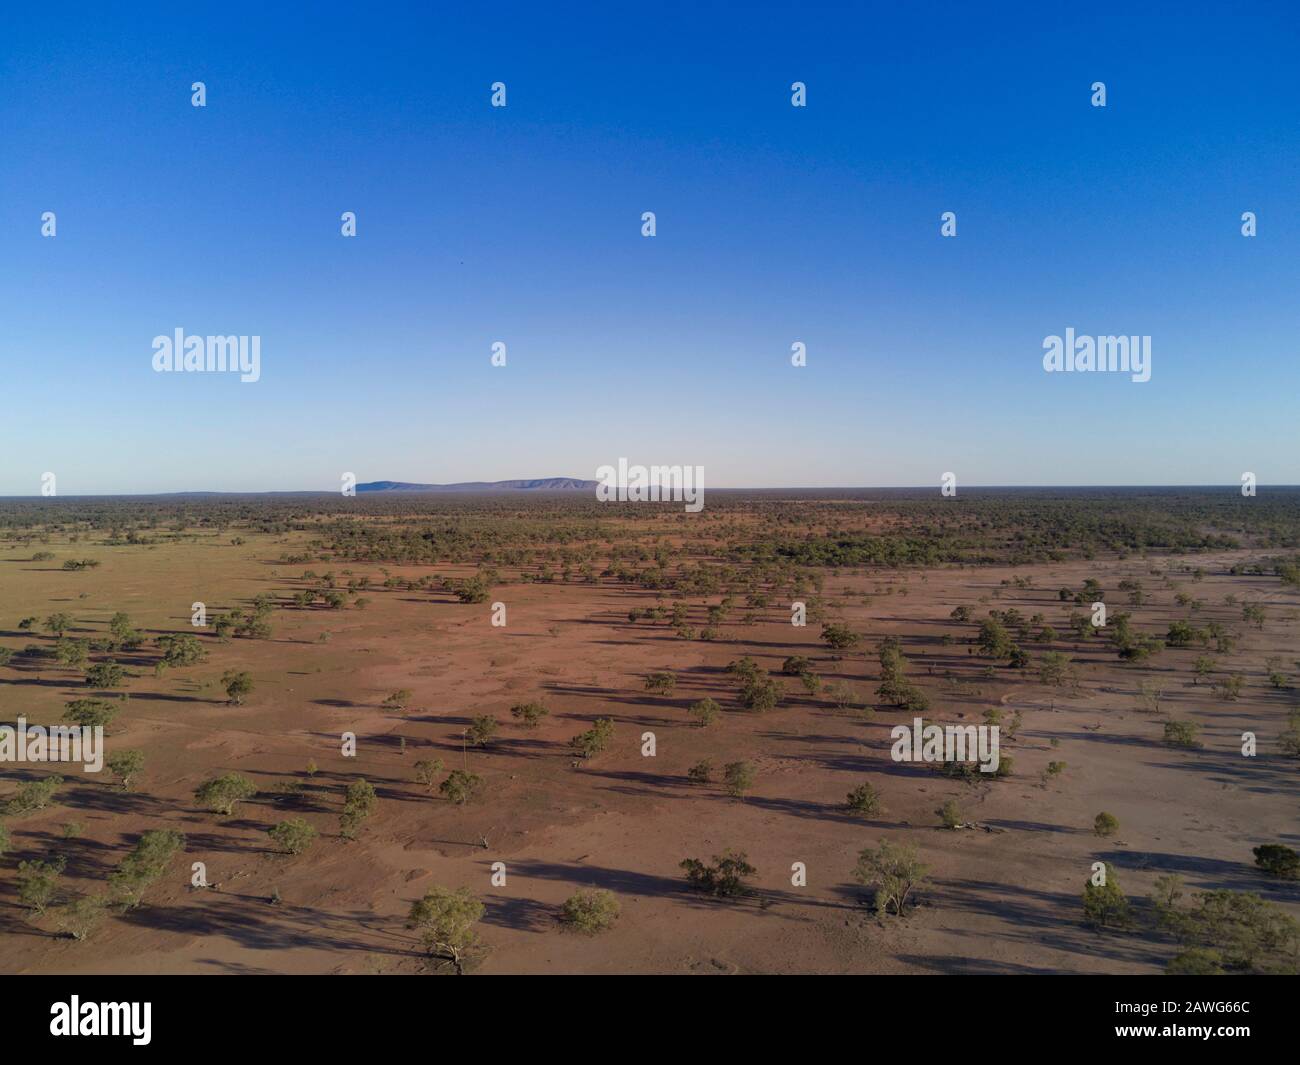 Luft aus den Überschwemmungsgebieten des Darling River, die auf den Mount Gundabooka blicken, überfluten das westliche New South Wales Australien Stockfoto